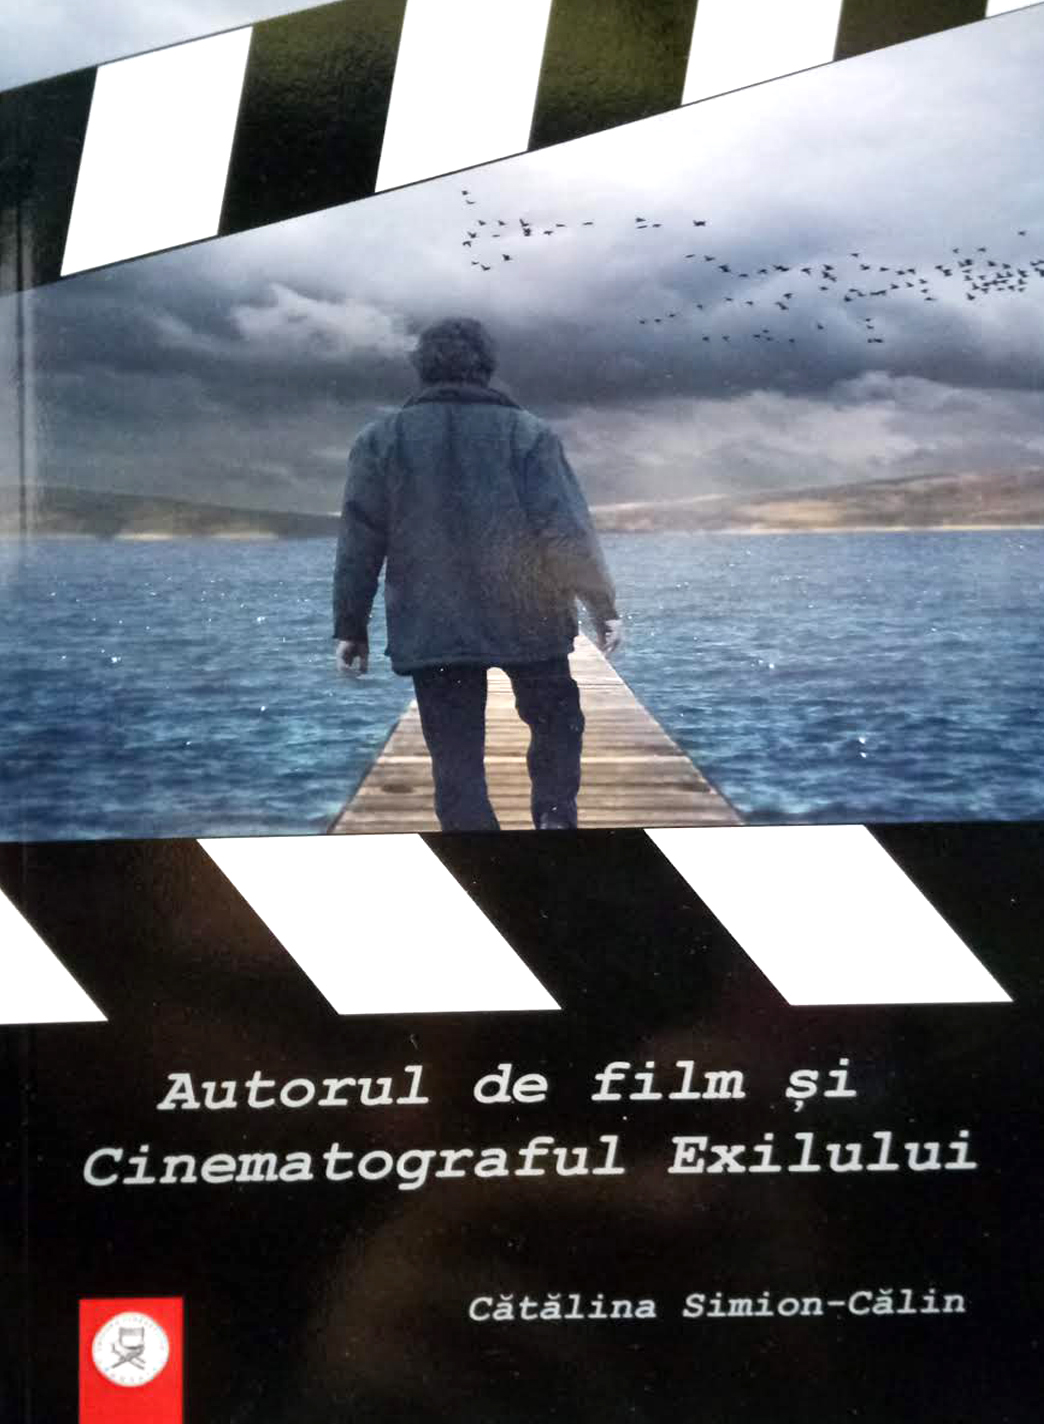 Autorul de film si Cinematograful Exilului | Catalina Simion Calin arhitectura